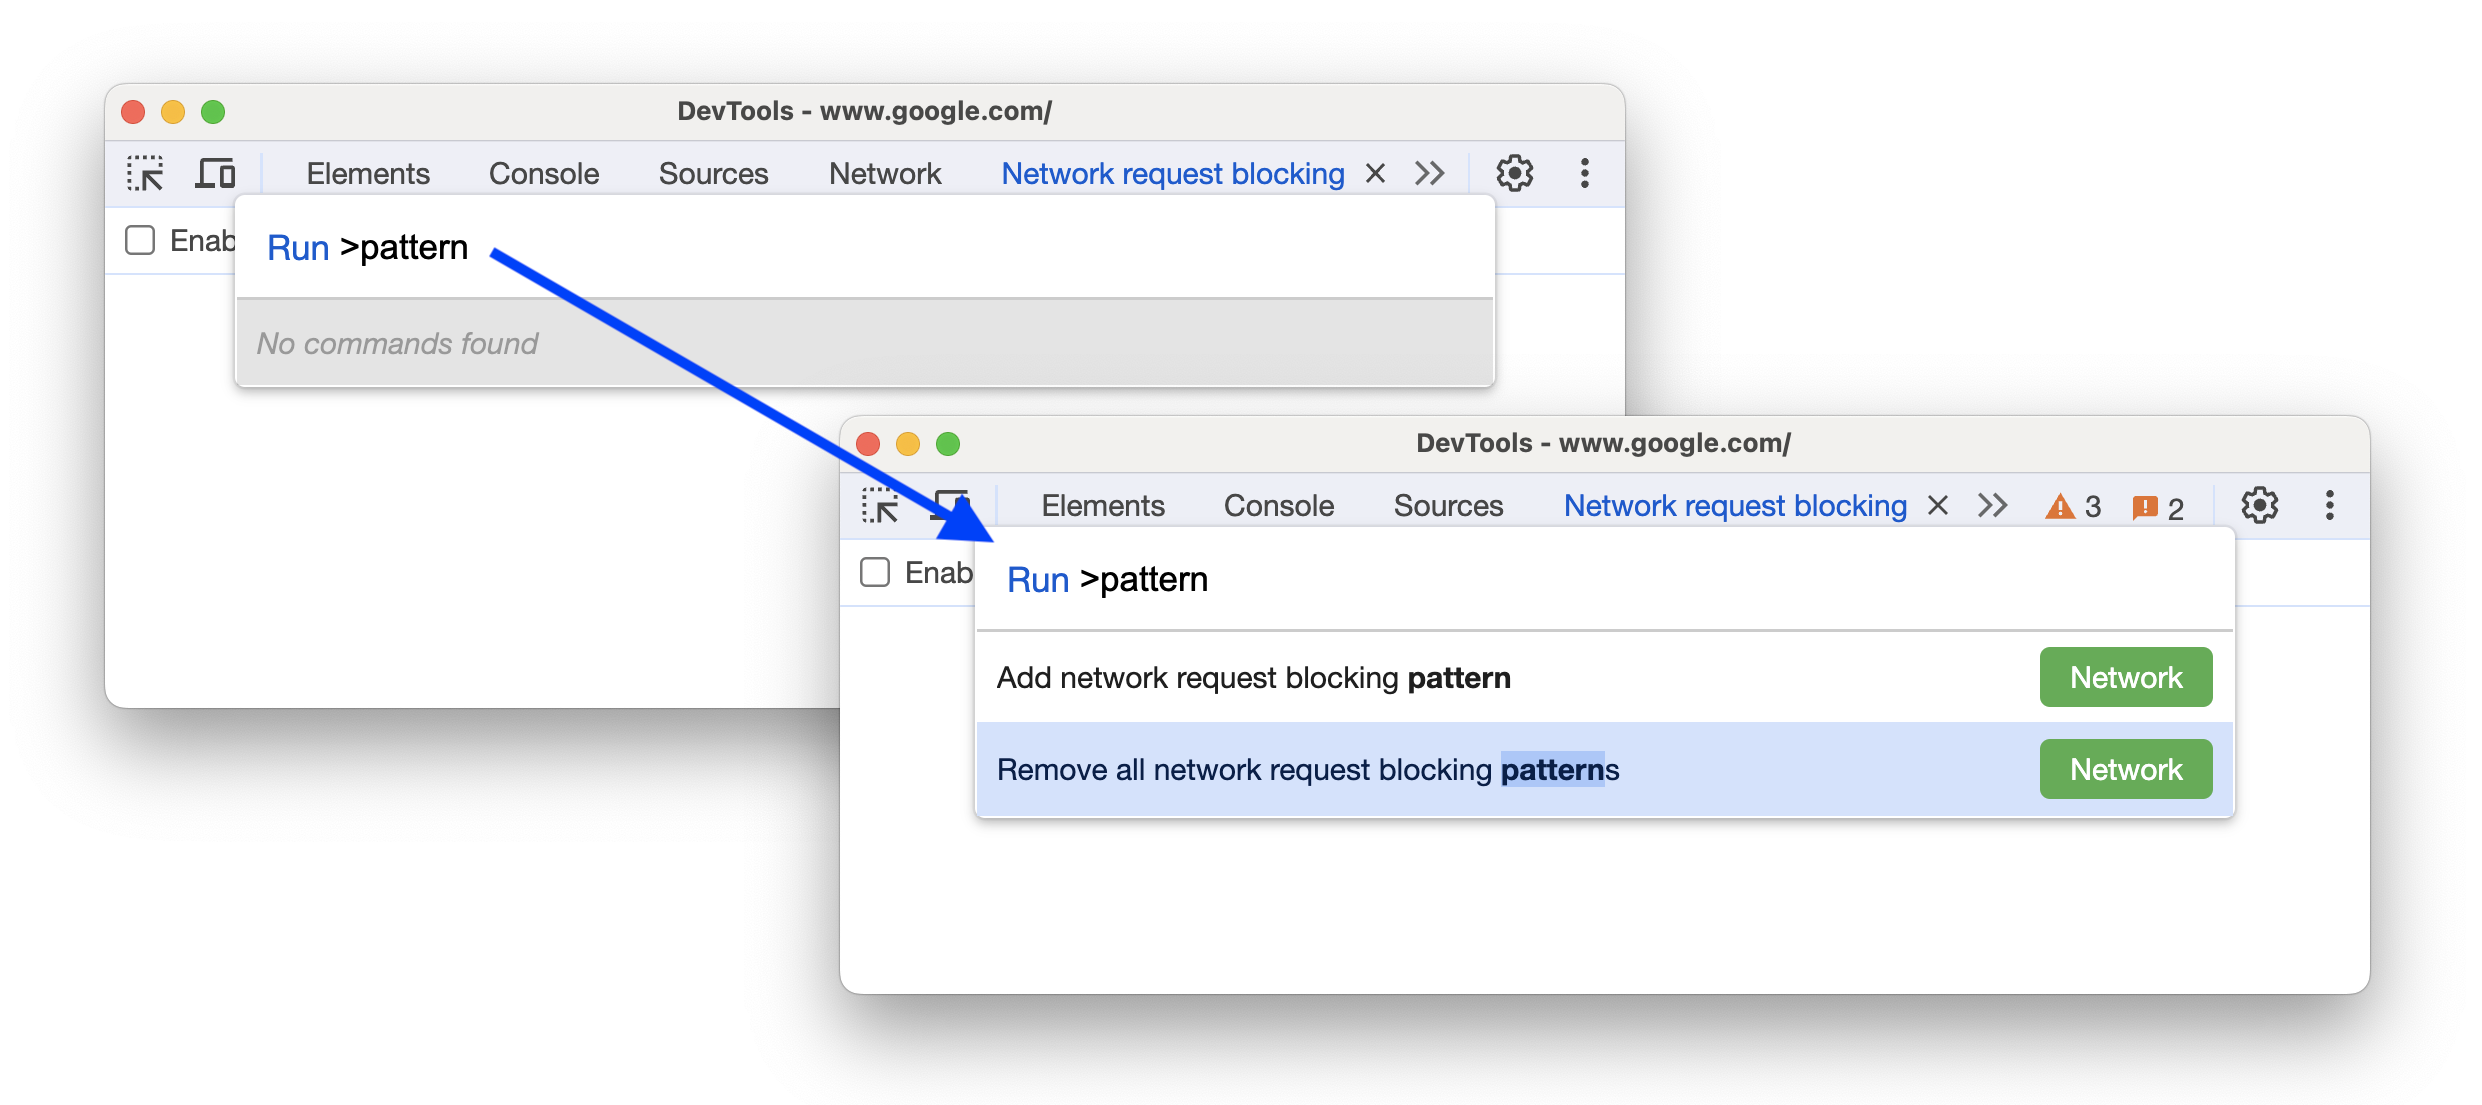 नेटवर्क ब्लॉक करने के पैटर्न को जोड़ने या हटाने के लिए, नए निर्देशों को जोड़ने से पहले और बाद में.